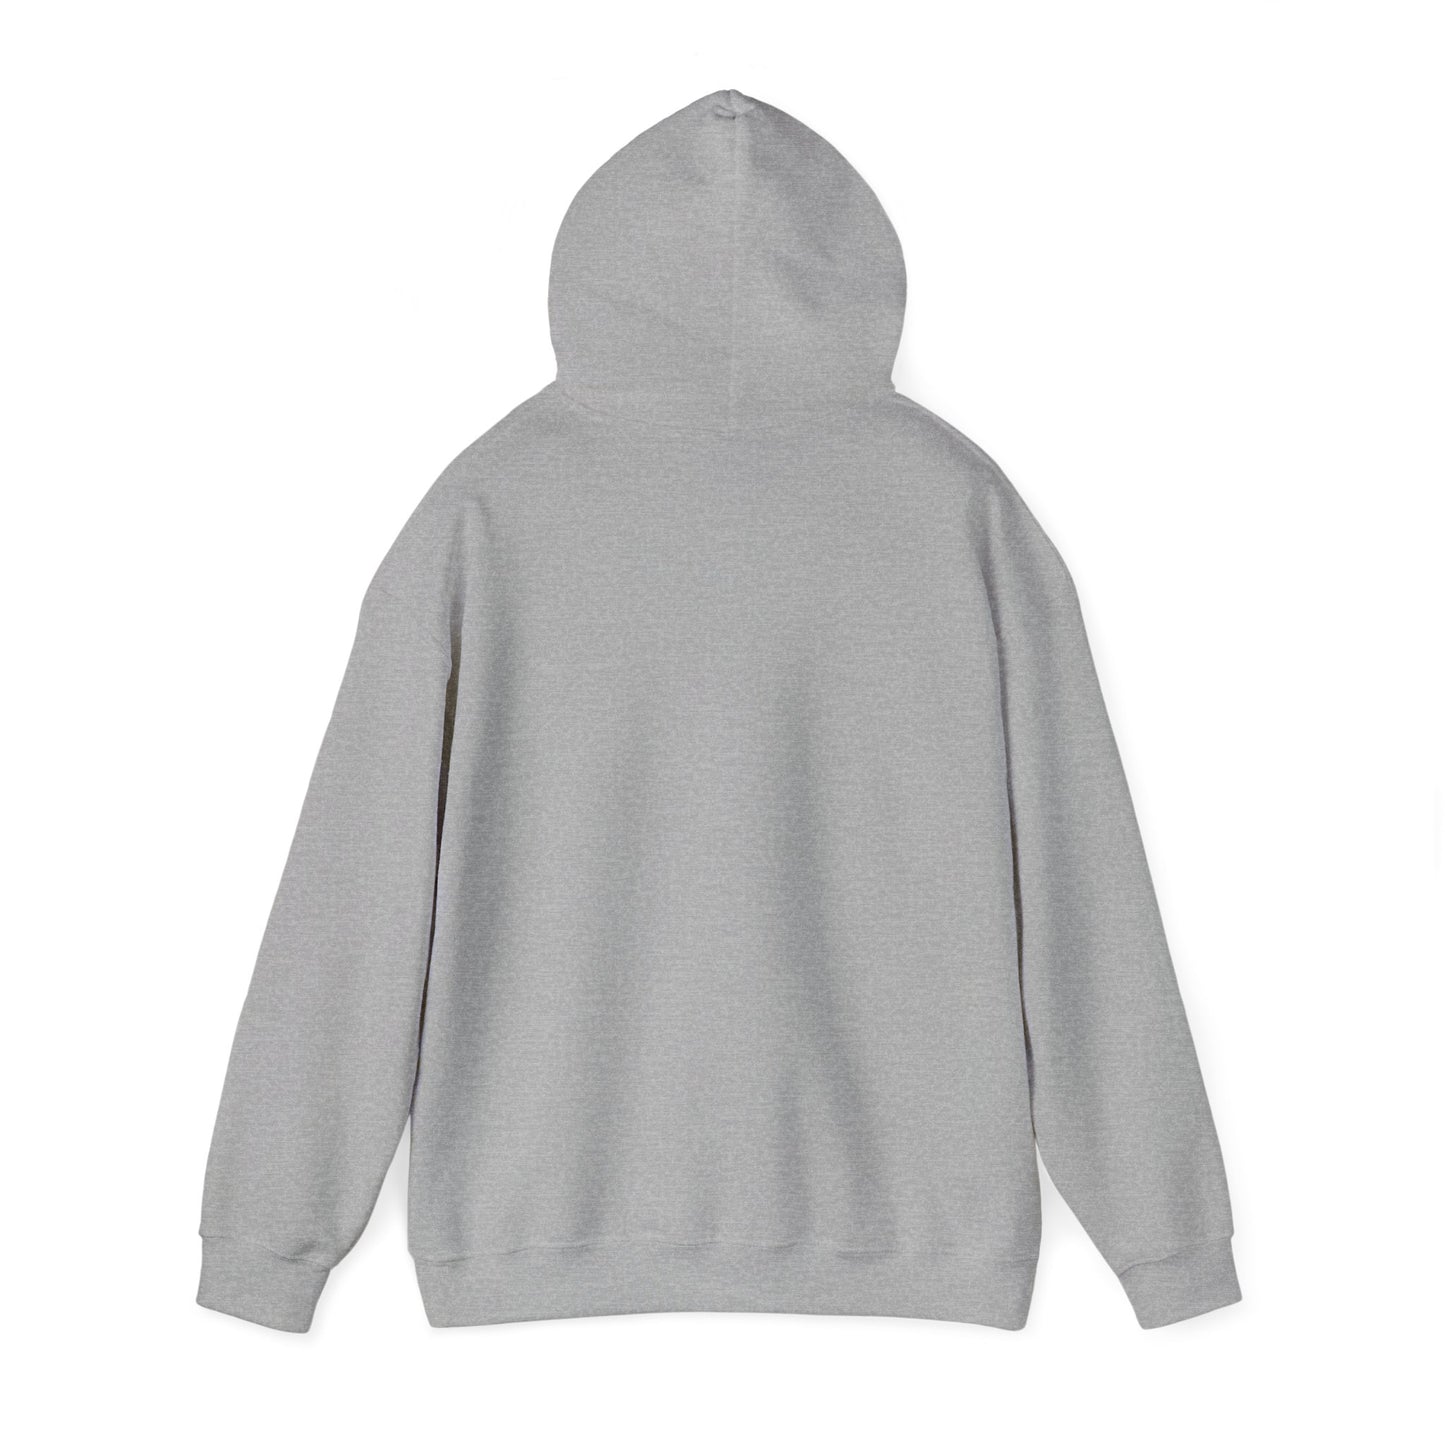 You Got This Hoodie - Unisex Heavy Blend Hooded Sweatshirt